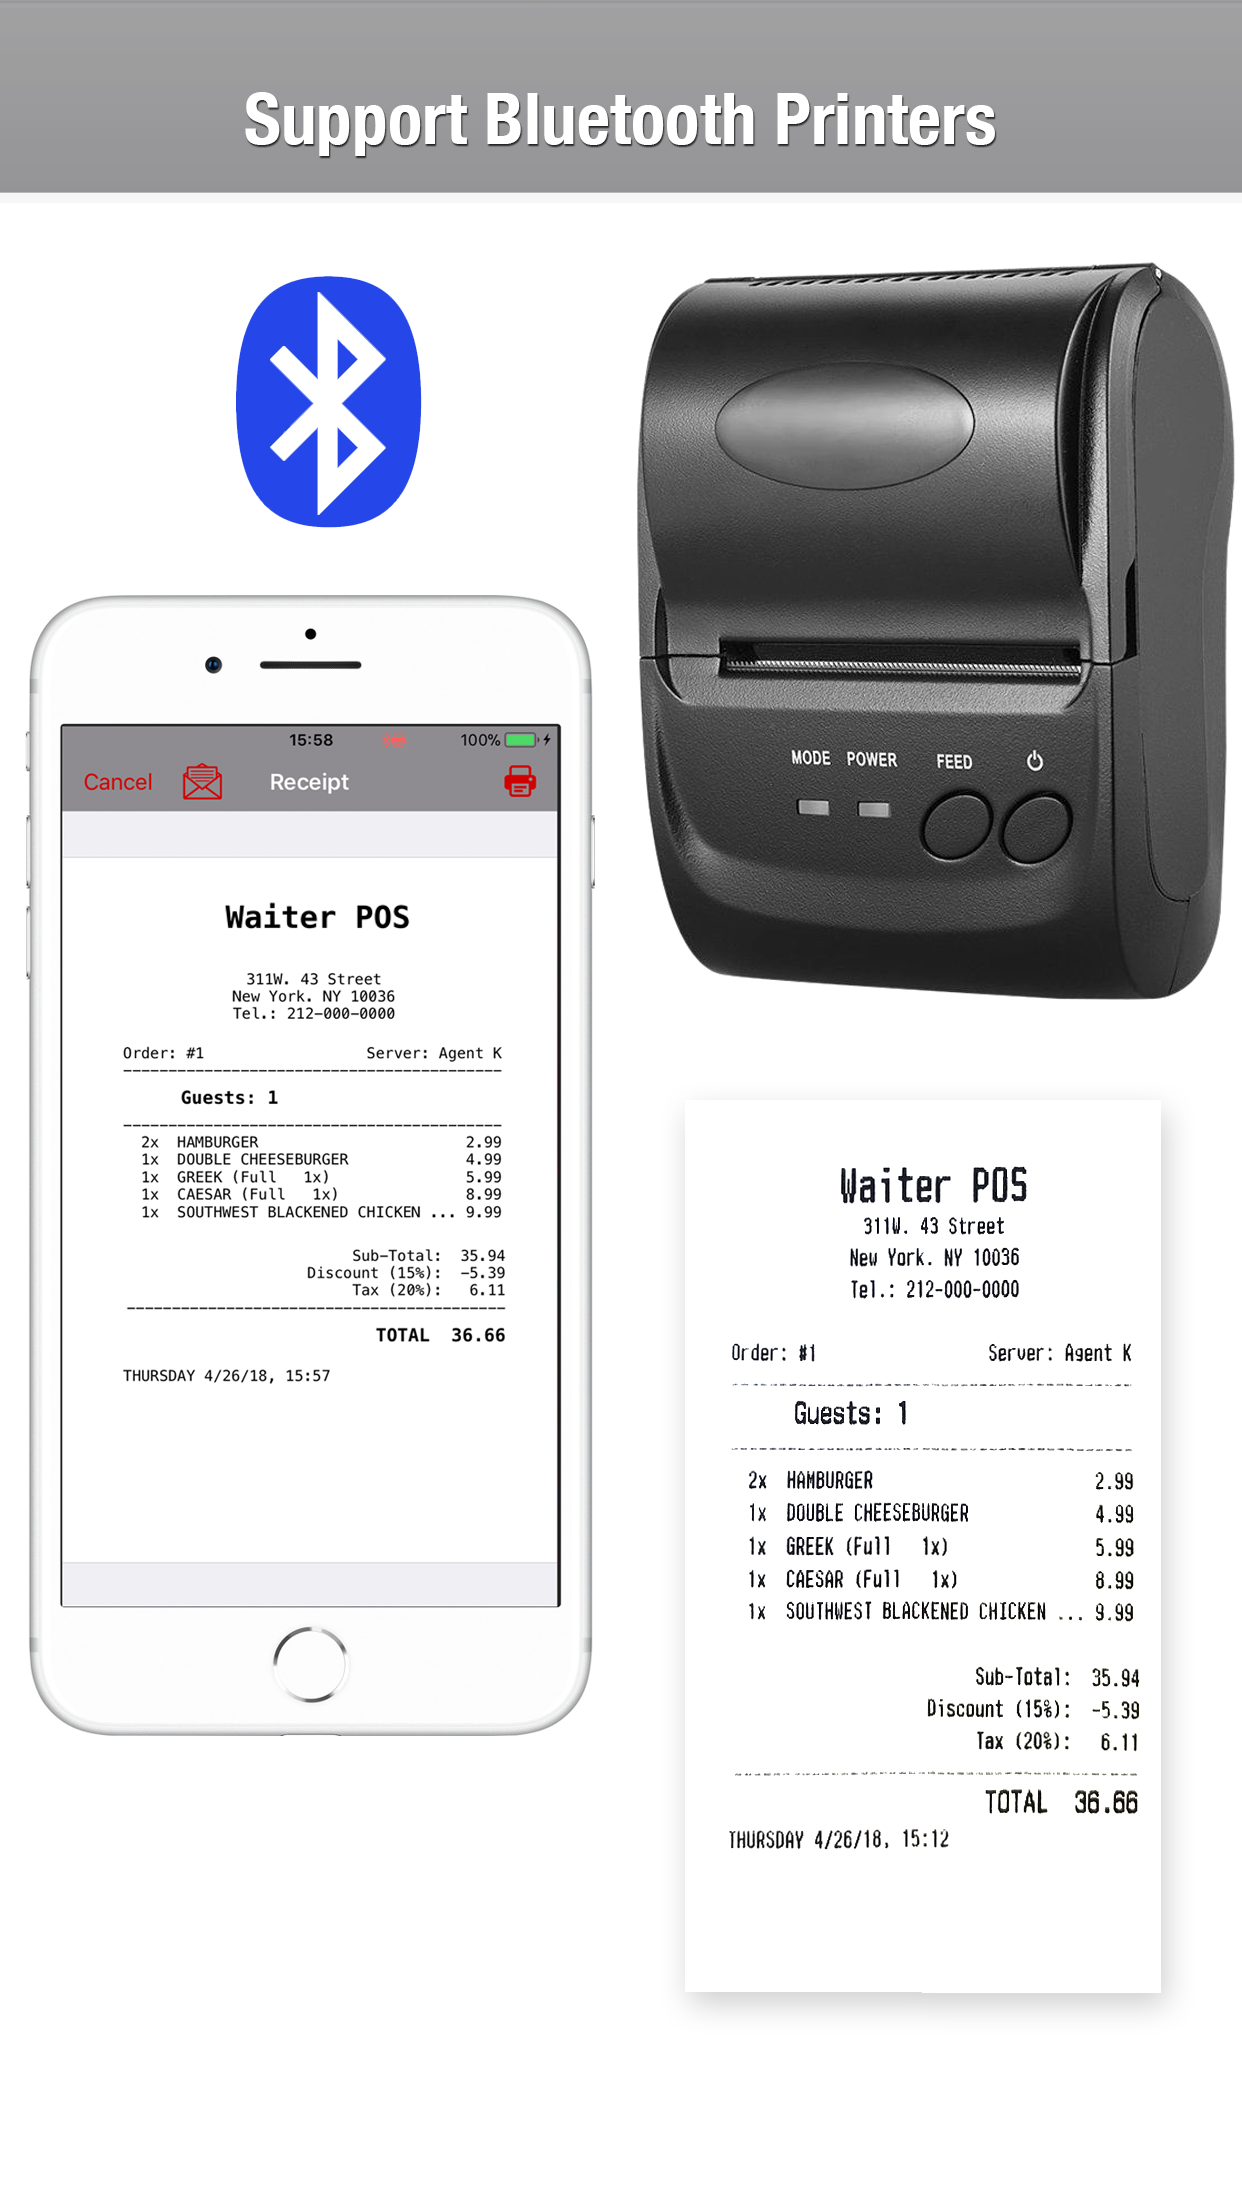 Restaurant POS system, Waiter POS, print receipt via bluetooth printer